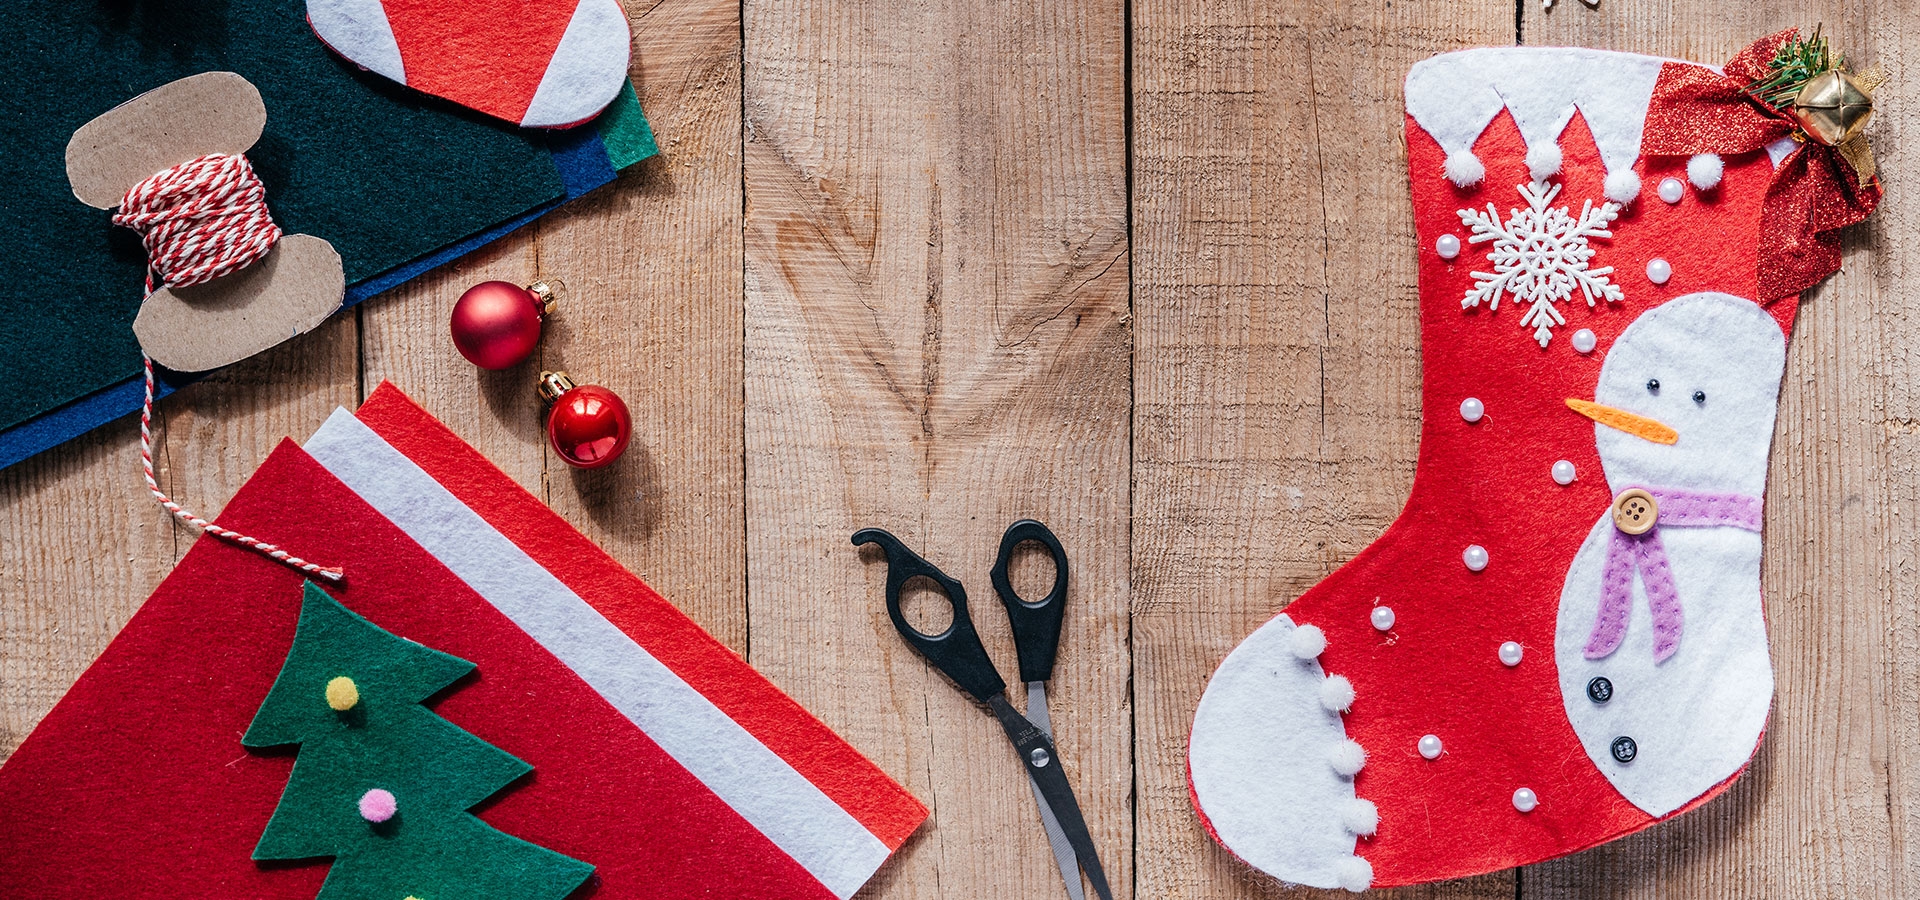 Personaliseer je kerstsok en naai er bijvoorbeeld kleine kerstboompjes op of kerstballen.